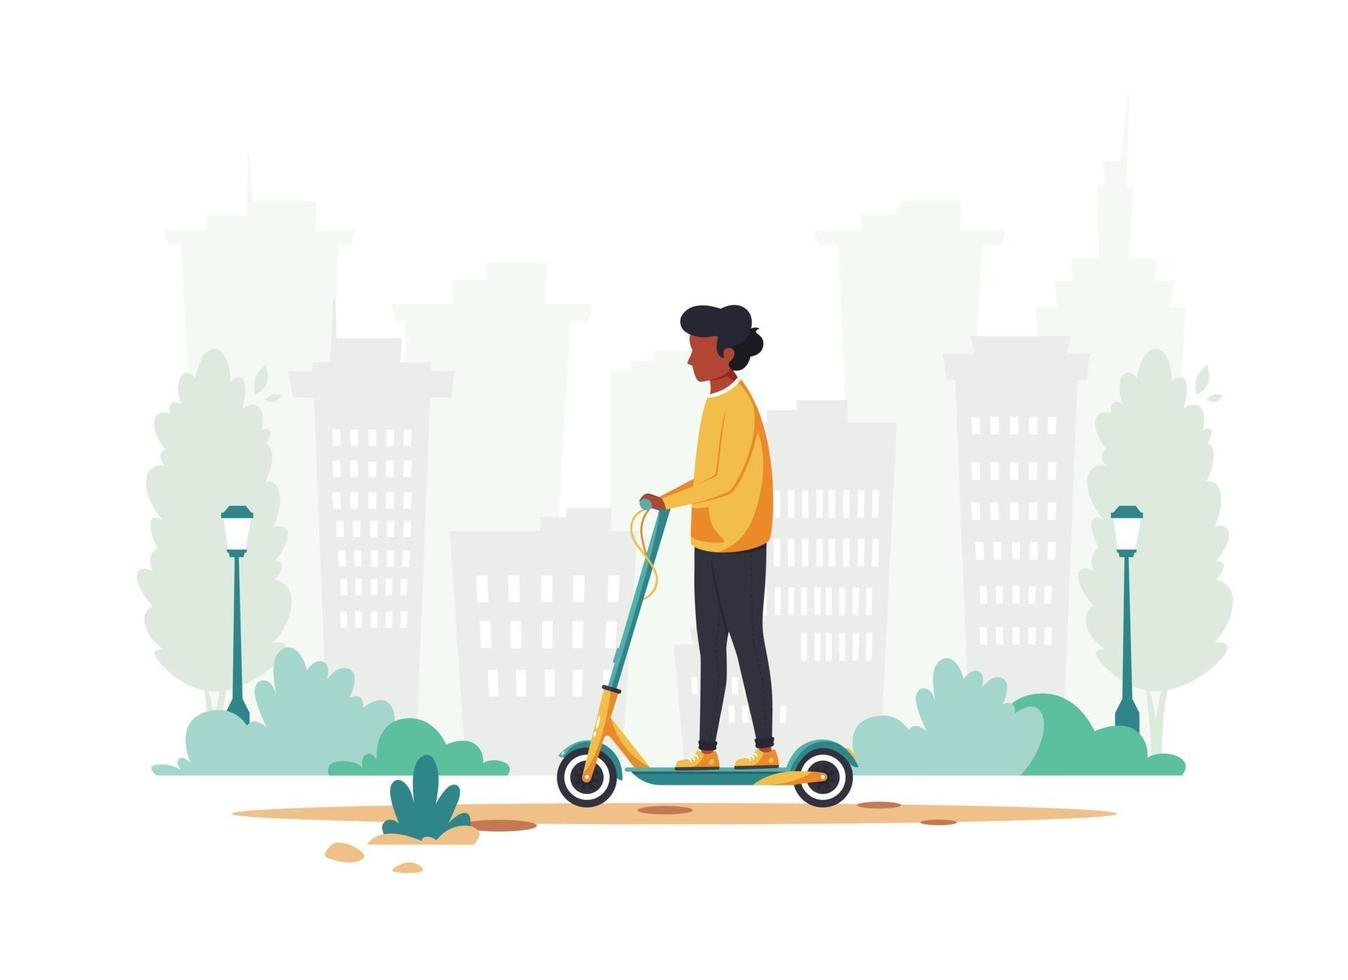 zwarte man elektrische kick scooter rijden. eco transport concept. vector illustratie